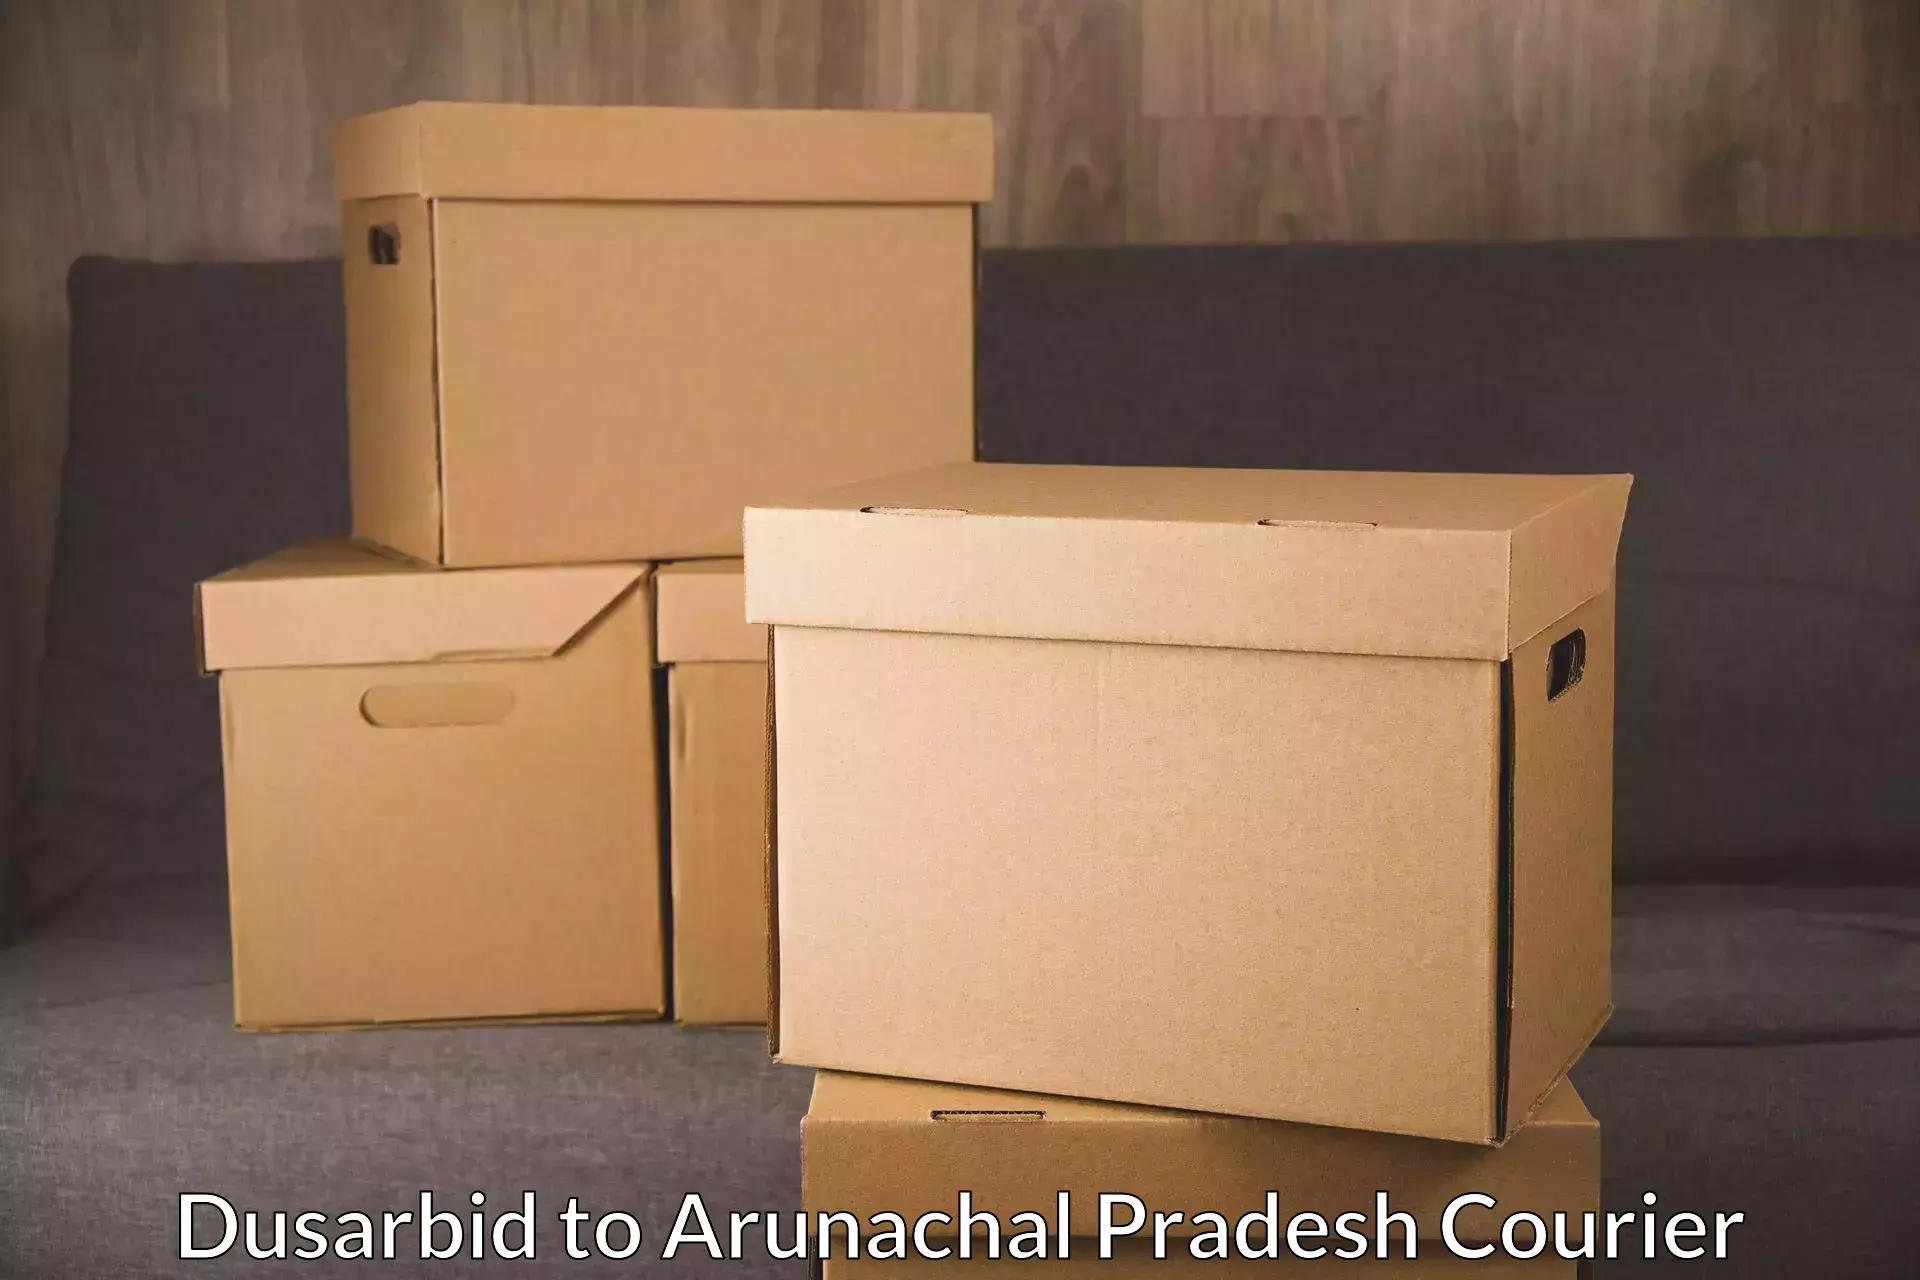 Ground shipping in Dusarbid to Arunachal Pradesh